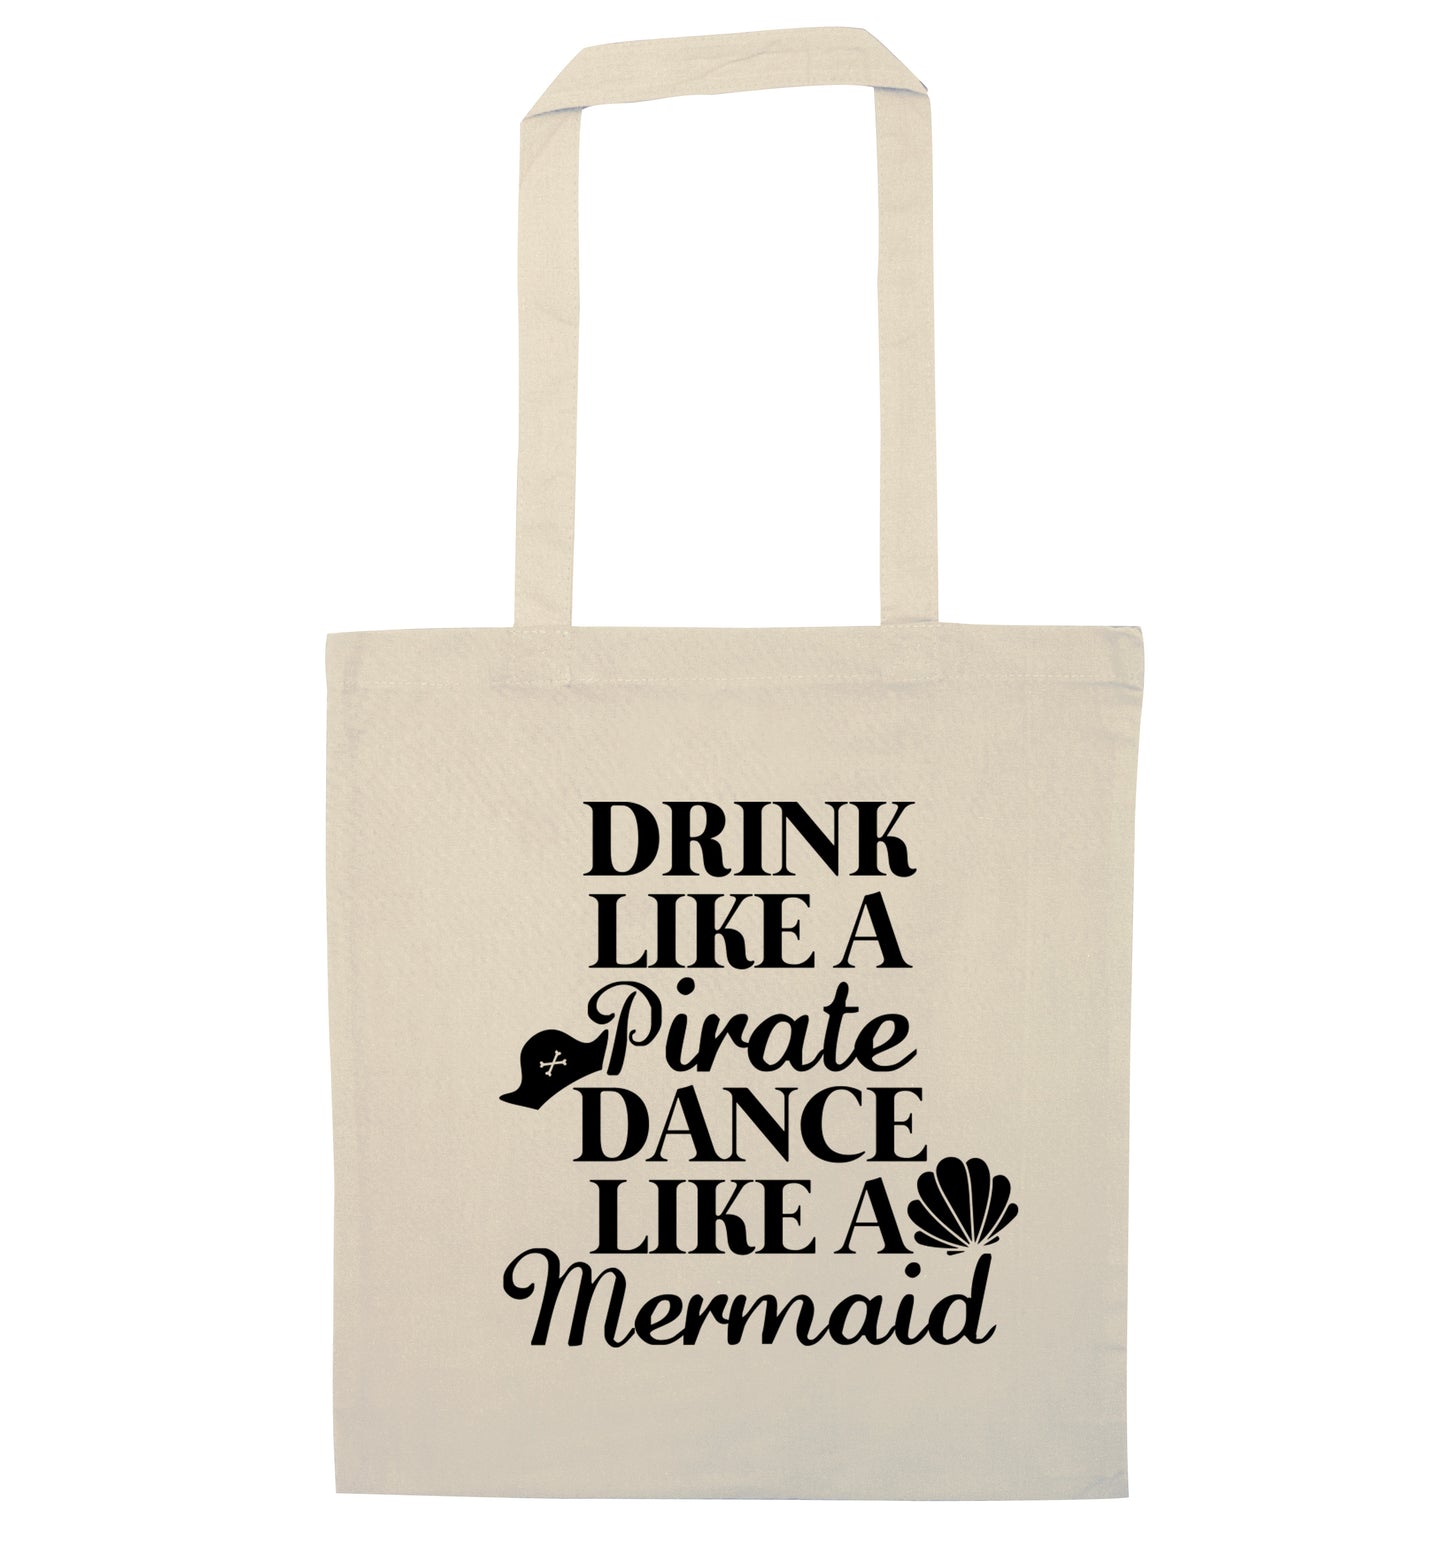 Drink like a pirate dance like a mermaid natural tote bag